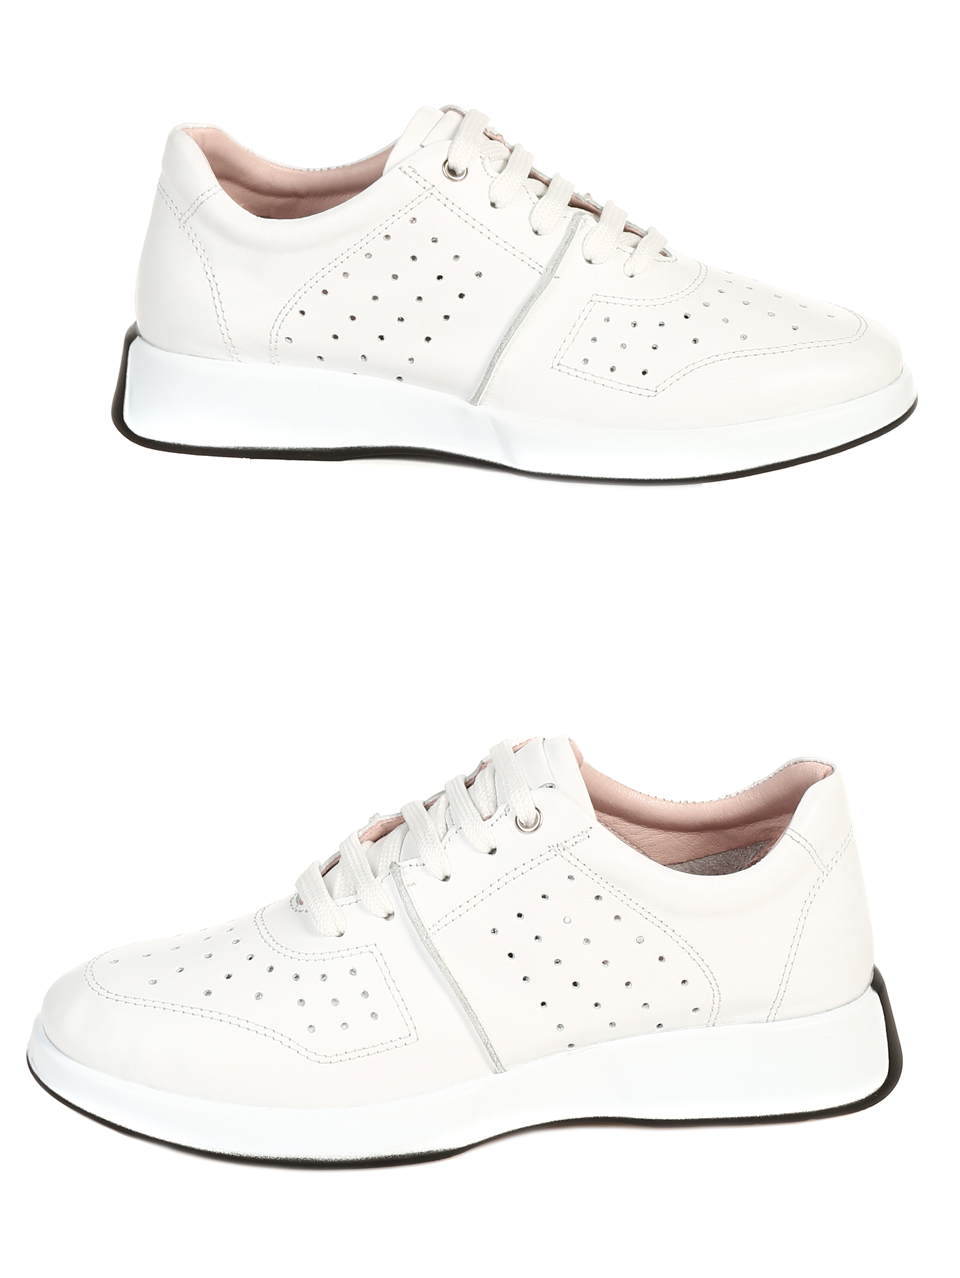 Ежедневни дамски обувки от естествена кожа в бяло 3AT-22306 white